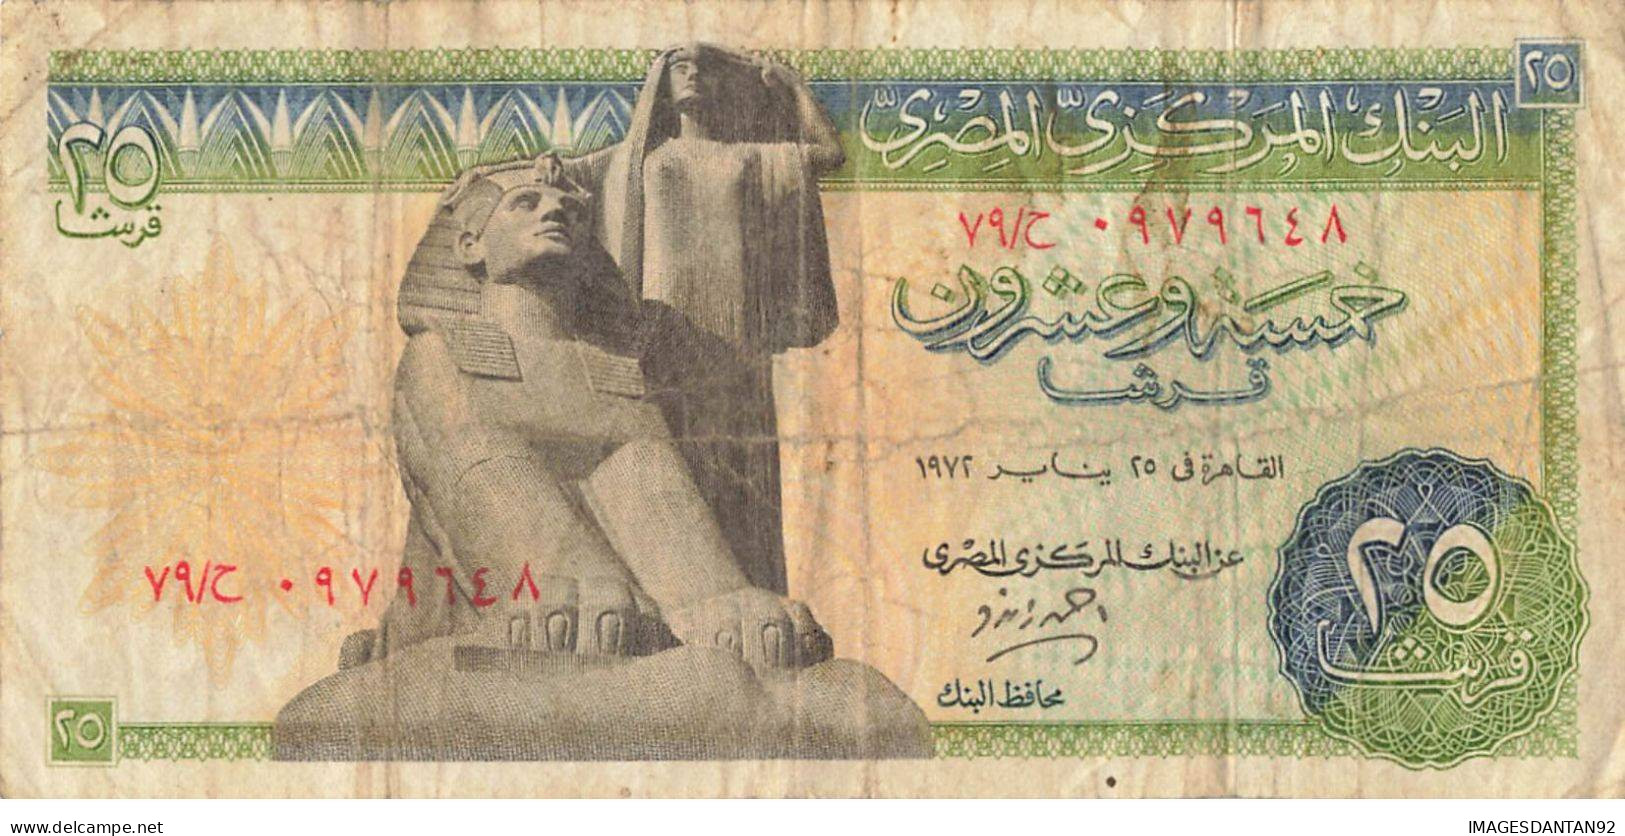 EGYPTE EGYPT 17 BANK NOTE PIASTRE POUND - Egypt